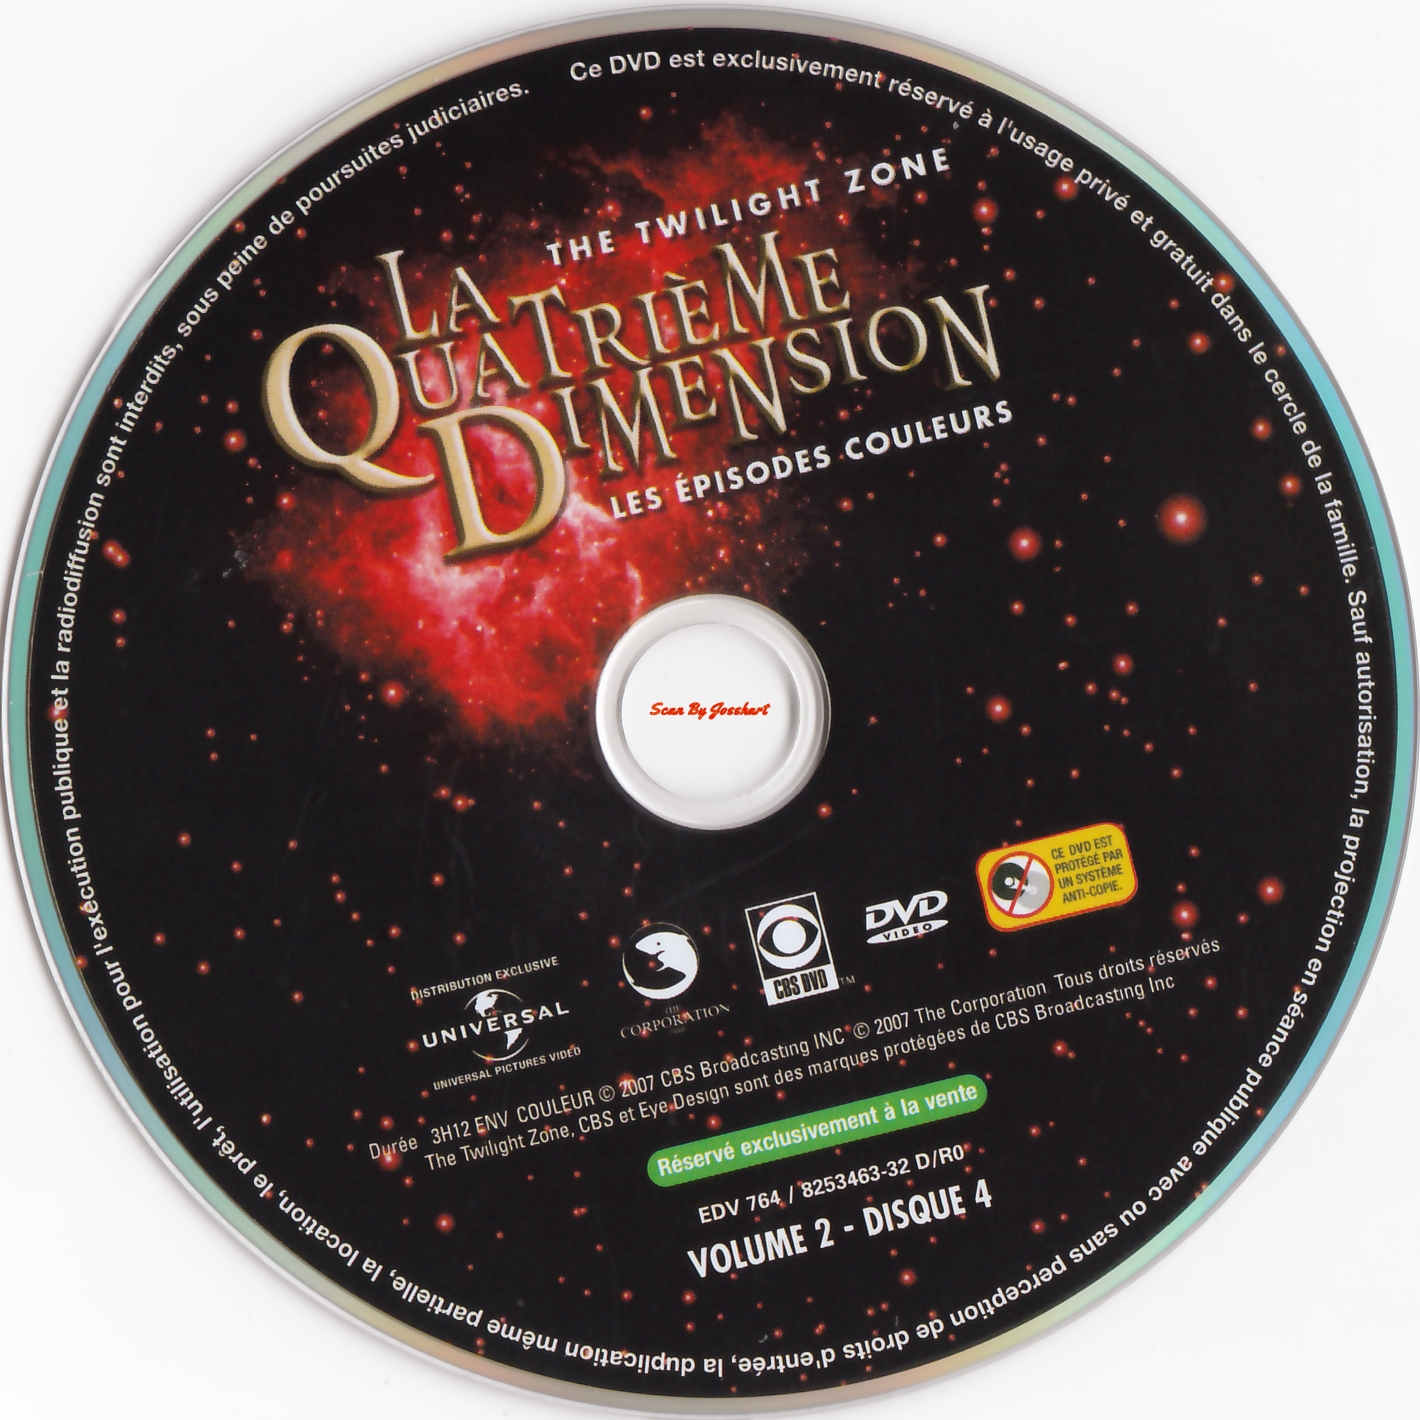 La quatrime dimension - Episodes couleurs vol 2 DISC 4